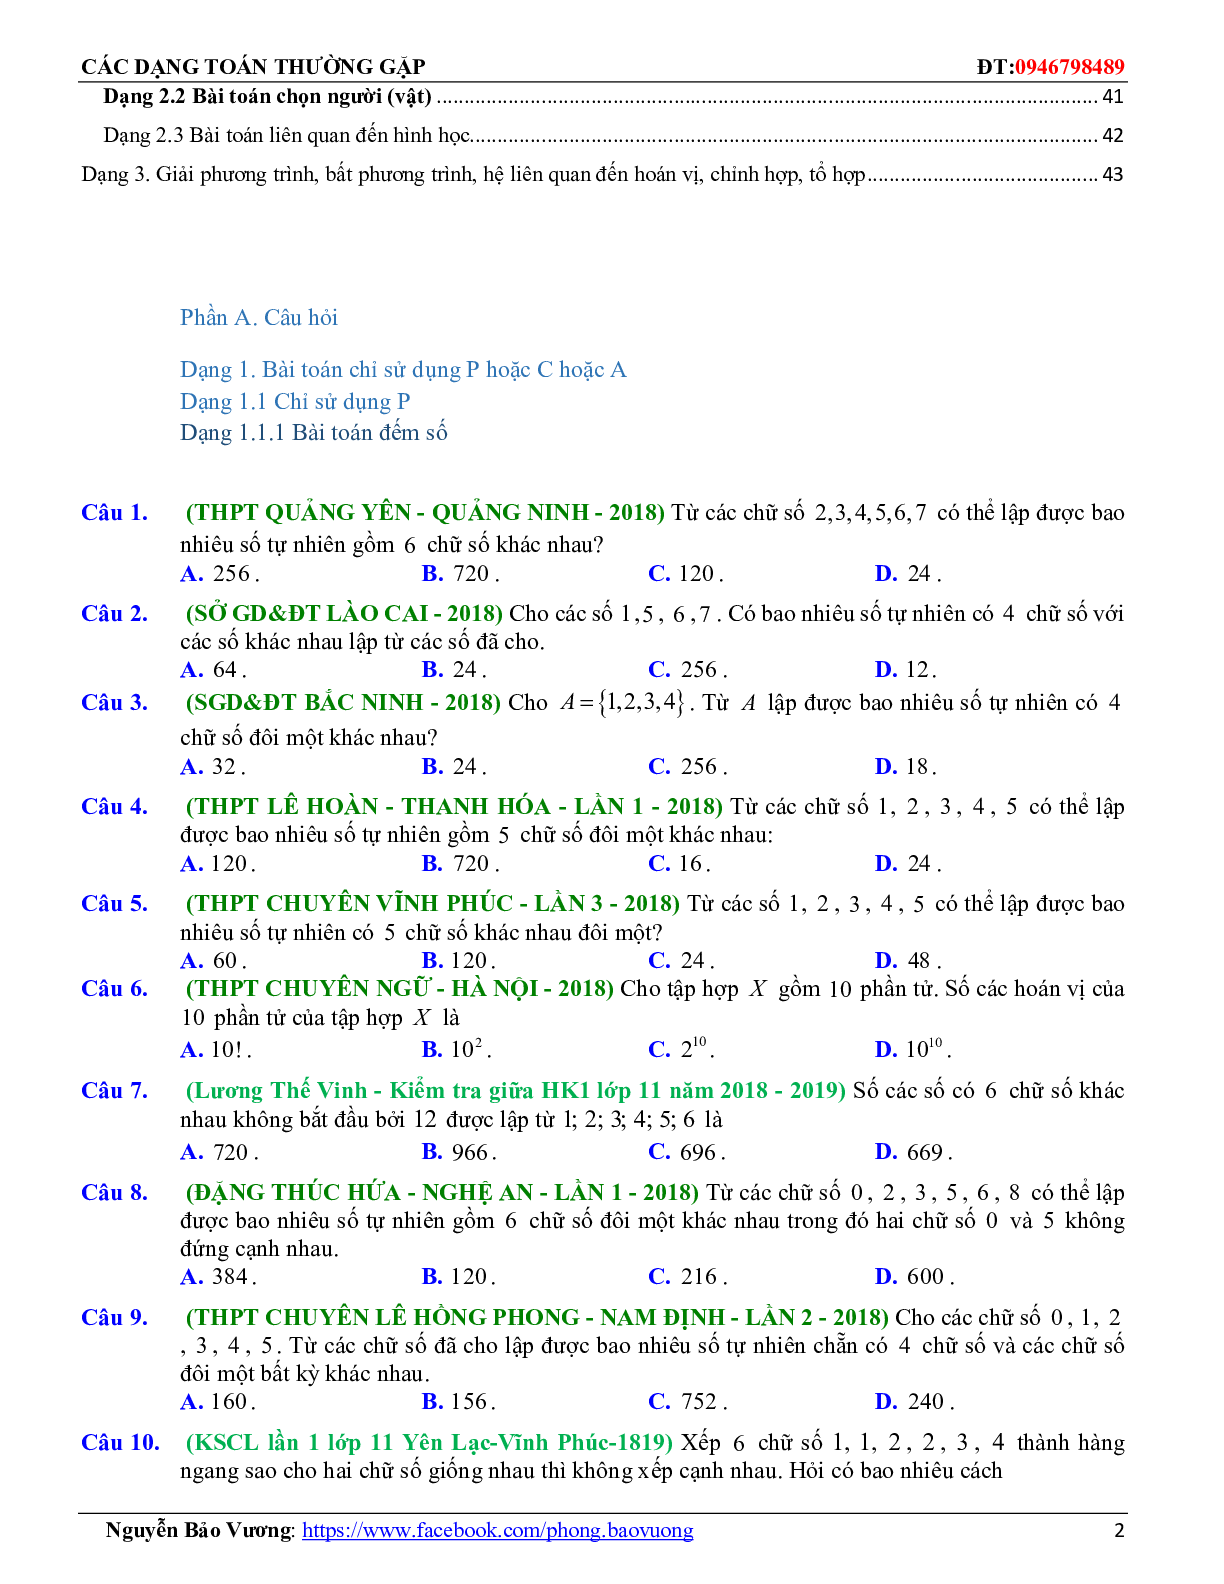 Các dạng toán quy tắc đếm, hoán vị, chỉnh hợp, tổ hợp thường gặp (trang 10)